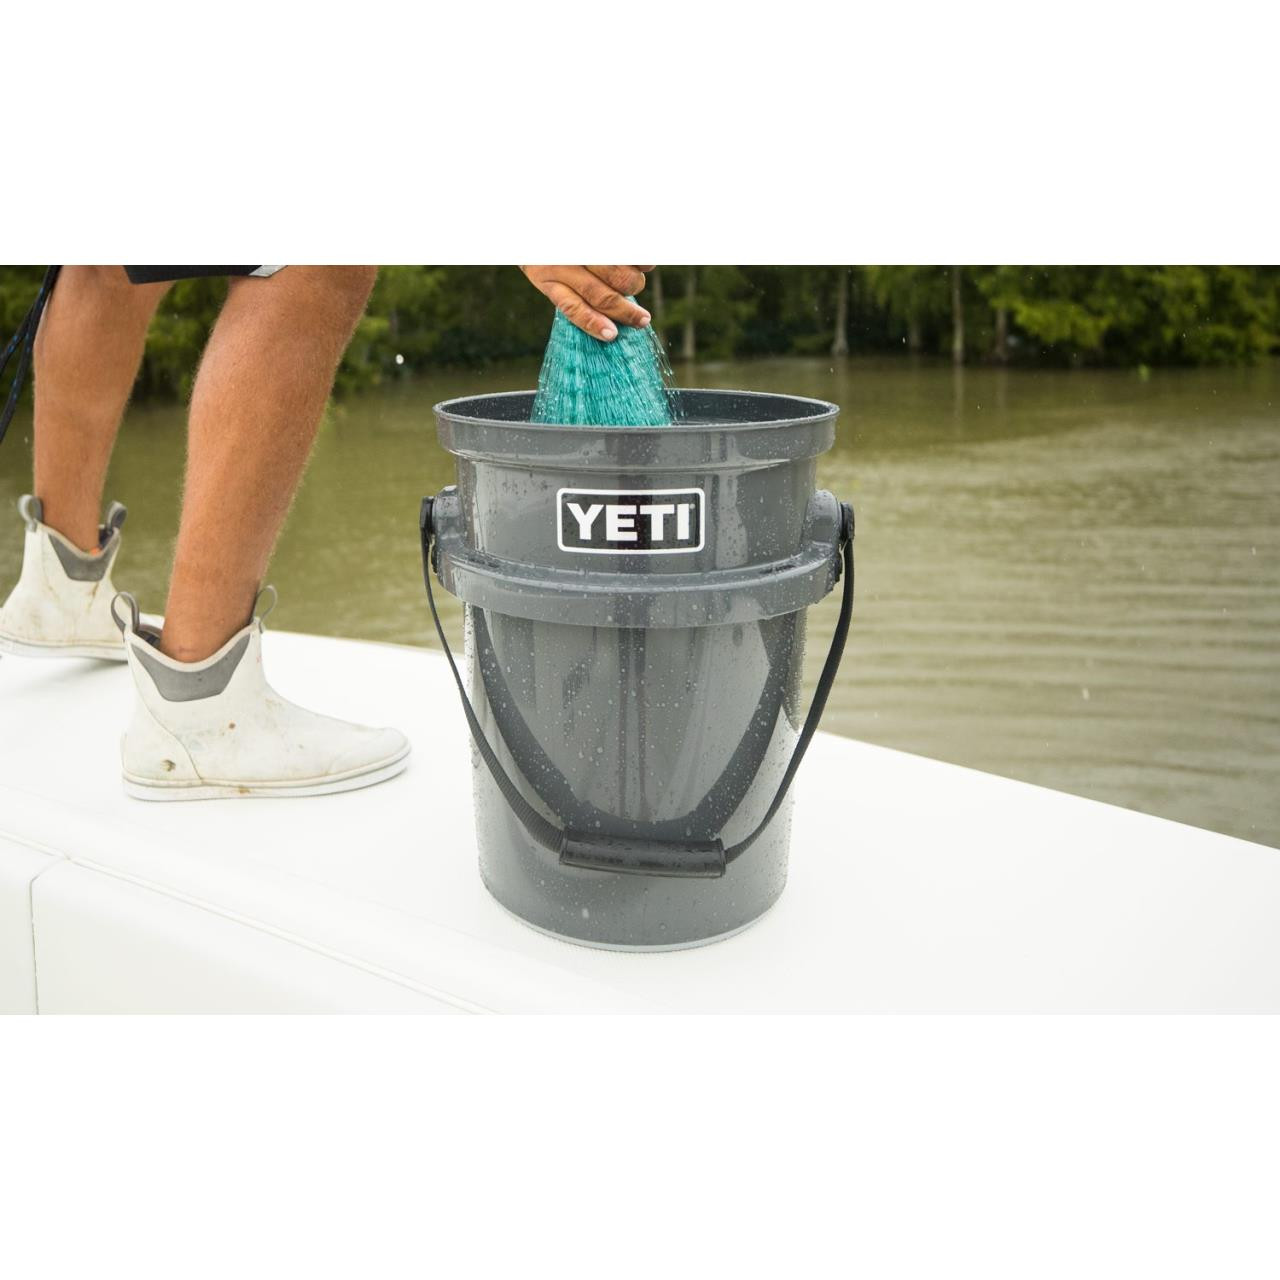 How To Build Waterproof Yeti Loadout Bait Bucket 